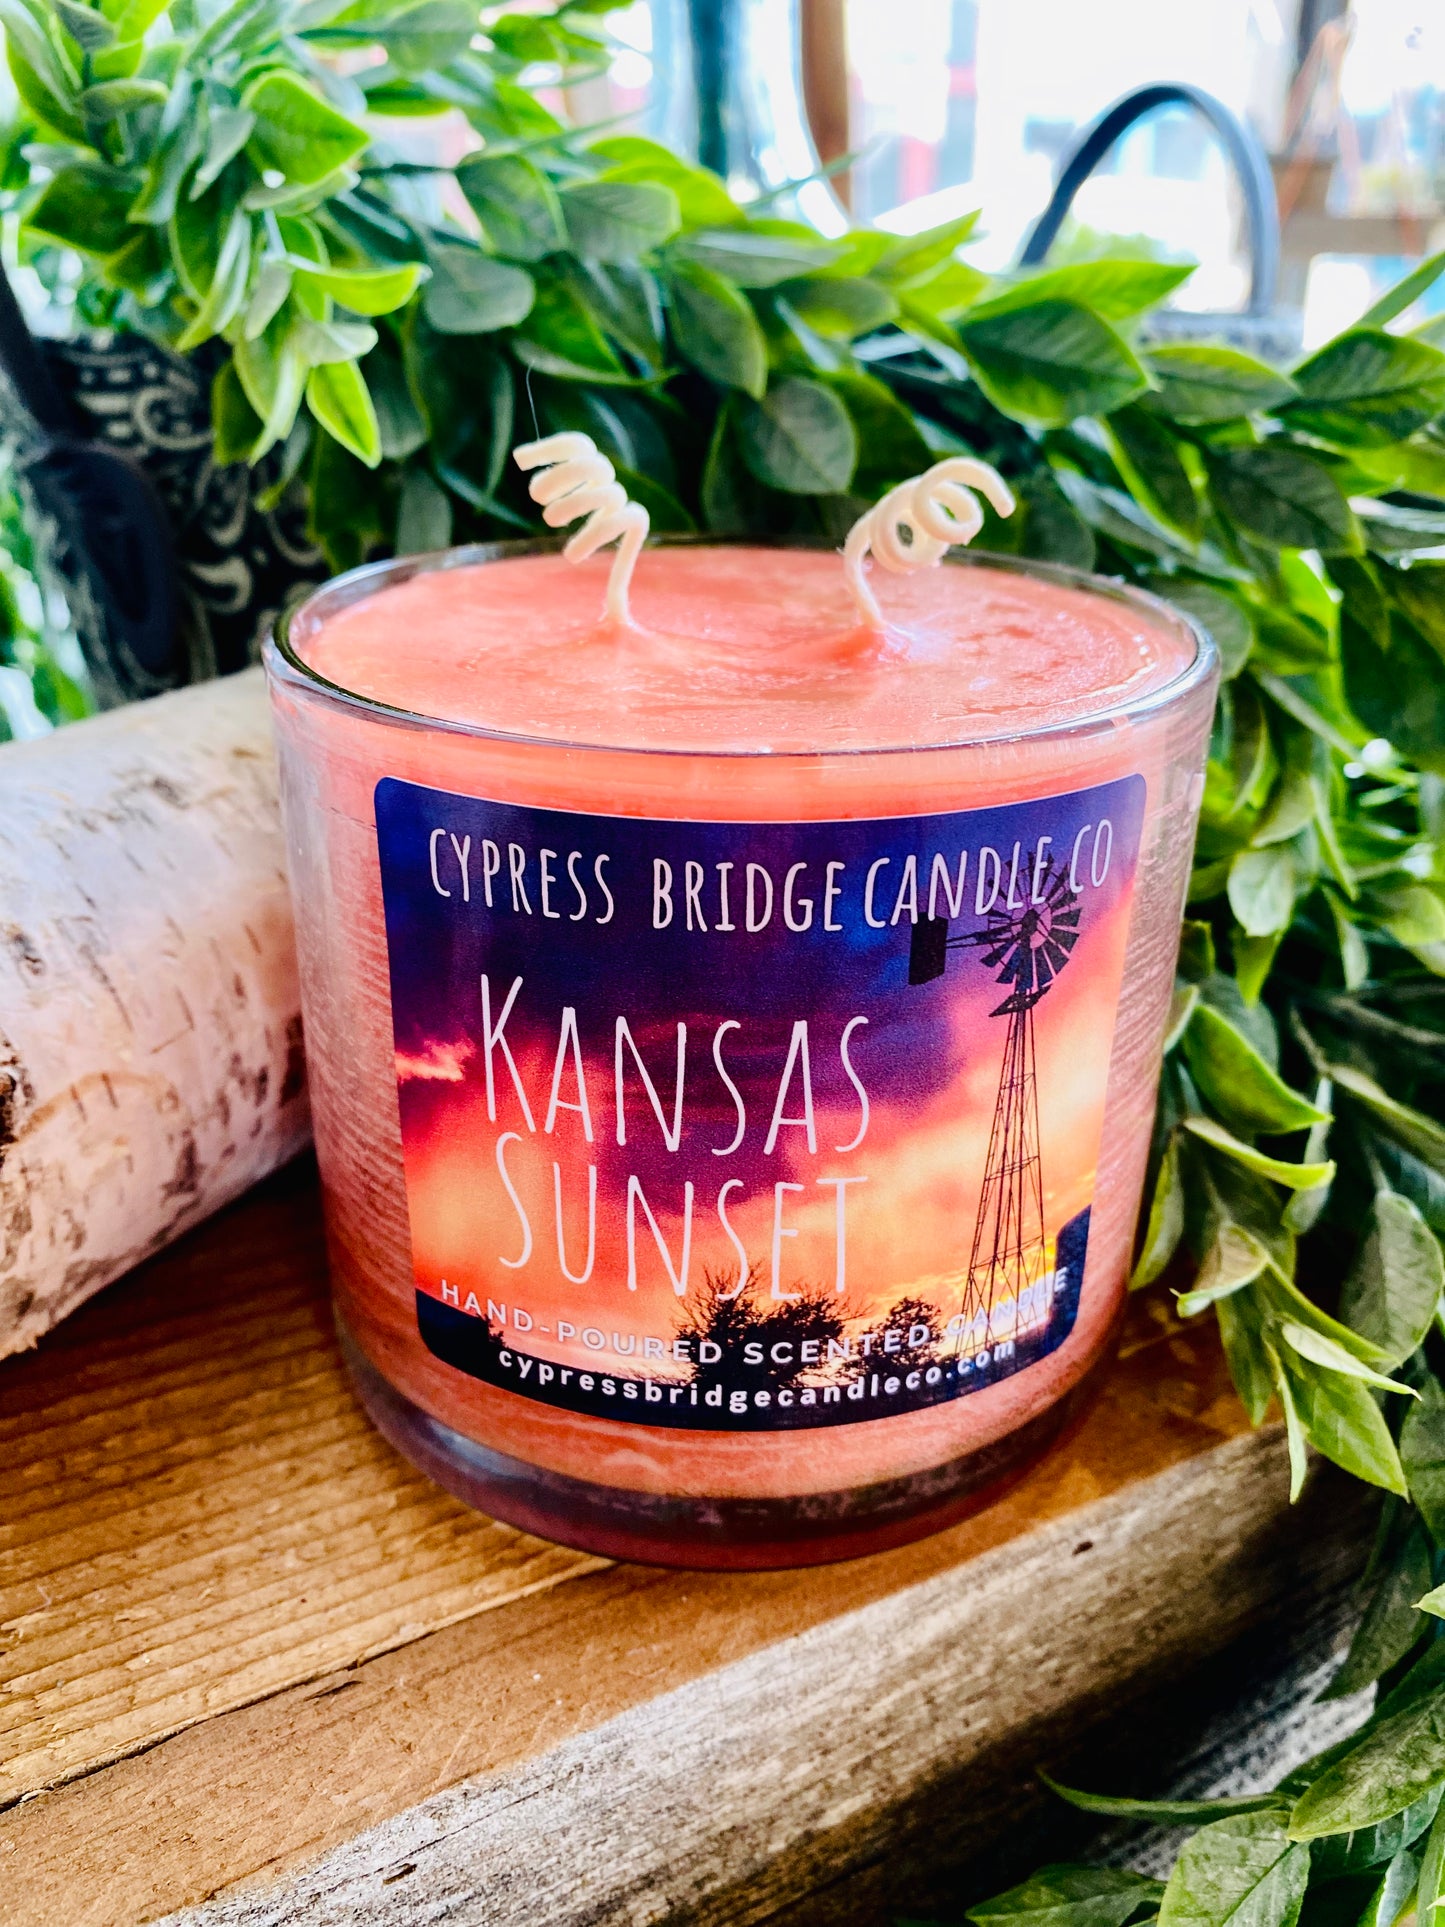 KANSAS SUNSET 15+oz / 2-wick Jar Candle